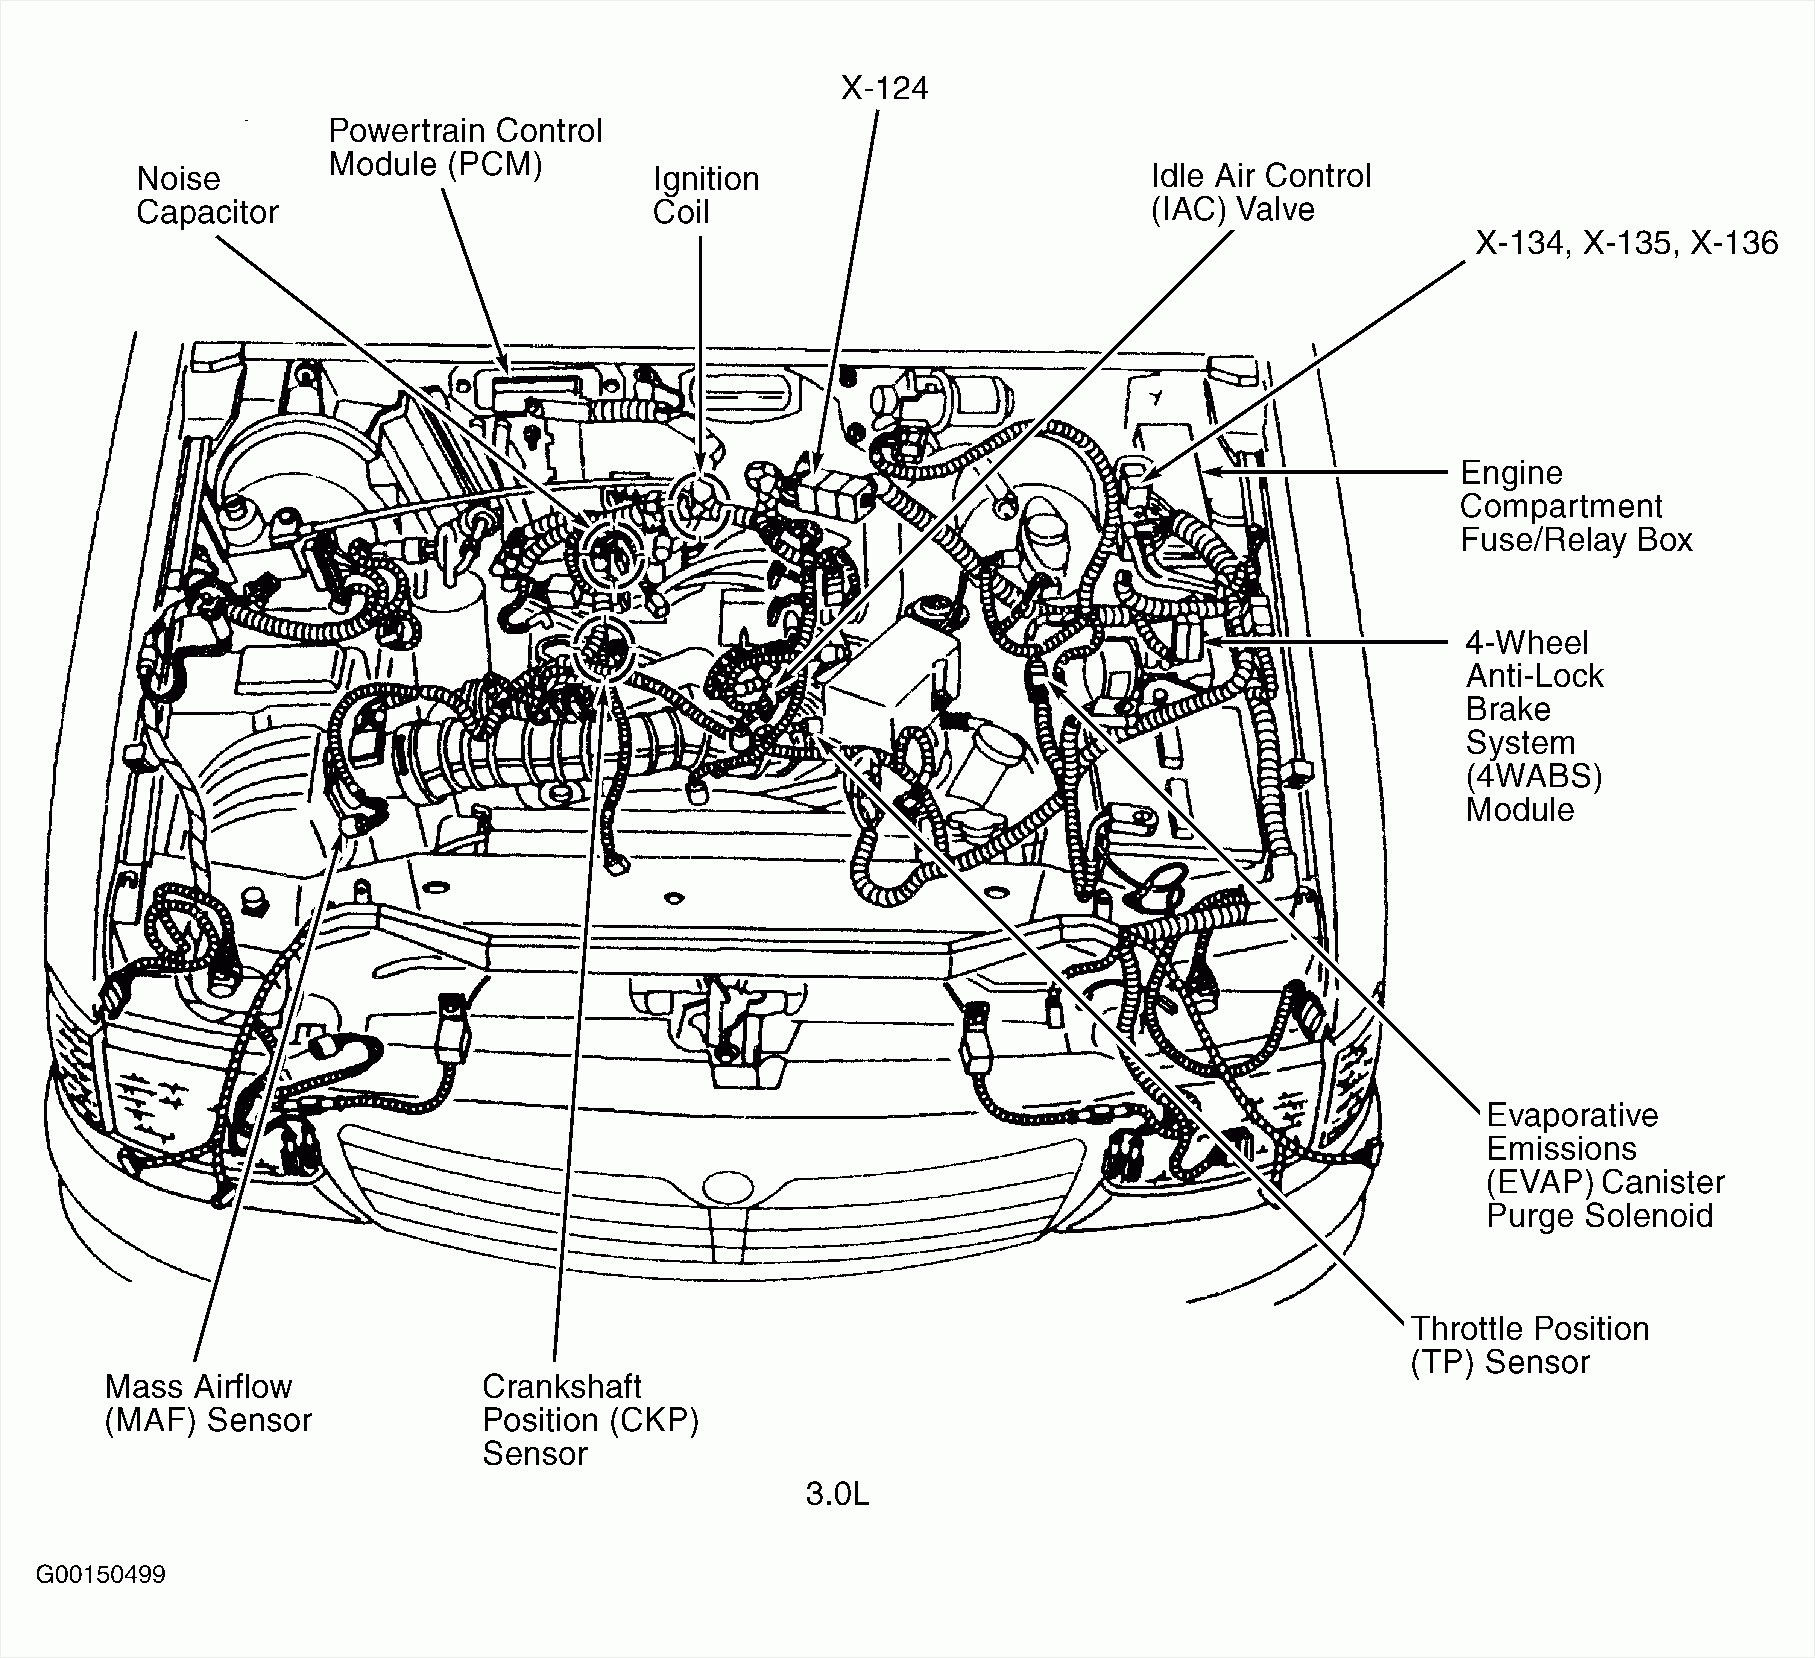 Chevy 3 1 Engine Diagram 2 Chevy 2 8 Engine Diagram Schema Wiring Diagram Of Chevy 3 1 Engine Diagram 2